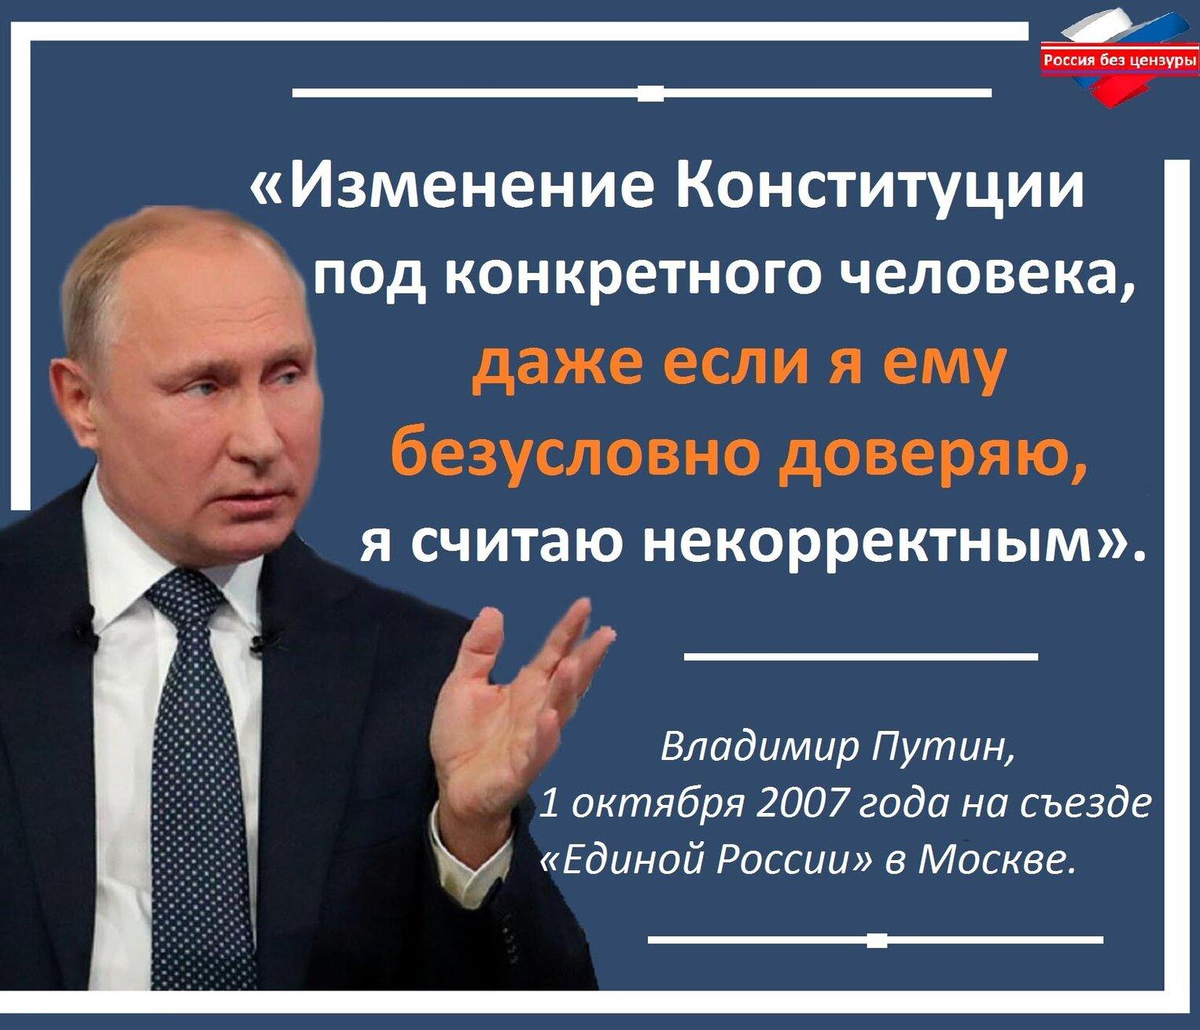 Конституция без изменений. Цитата Путина про Конституцию. Законы против народа.